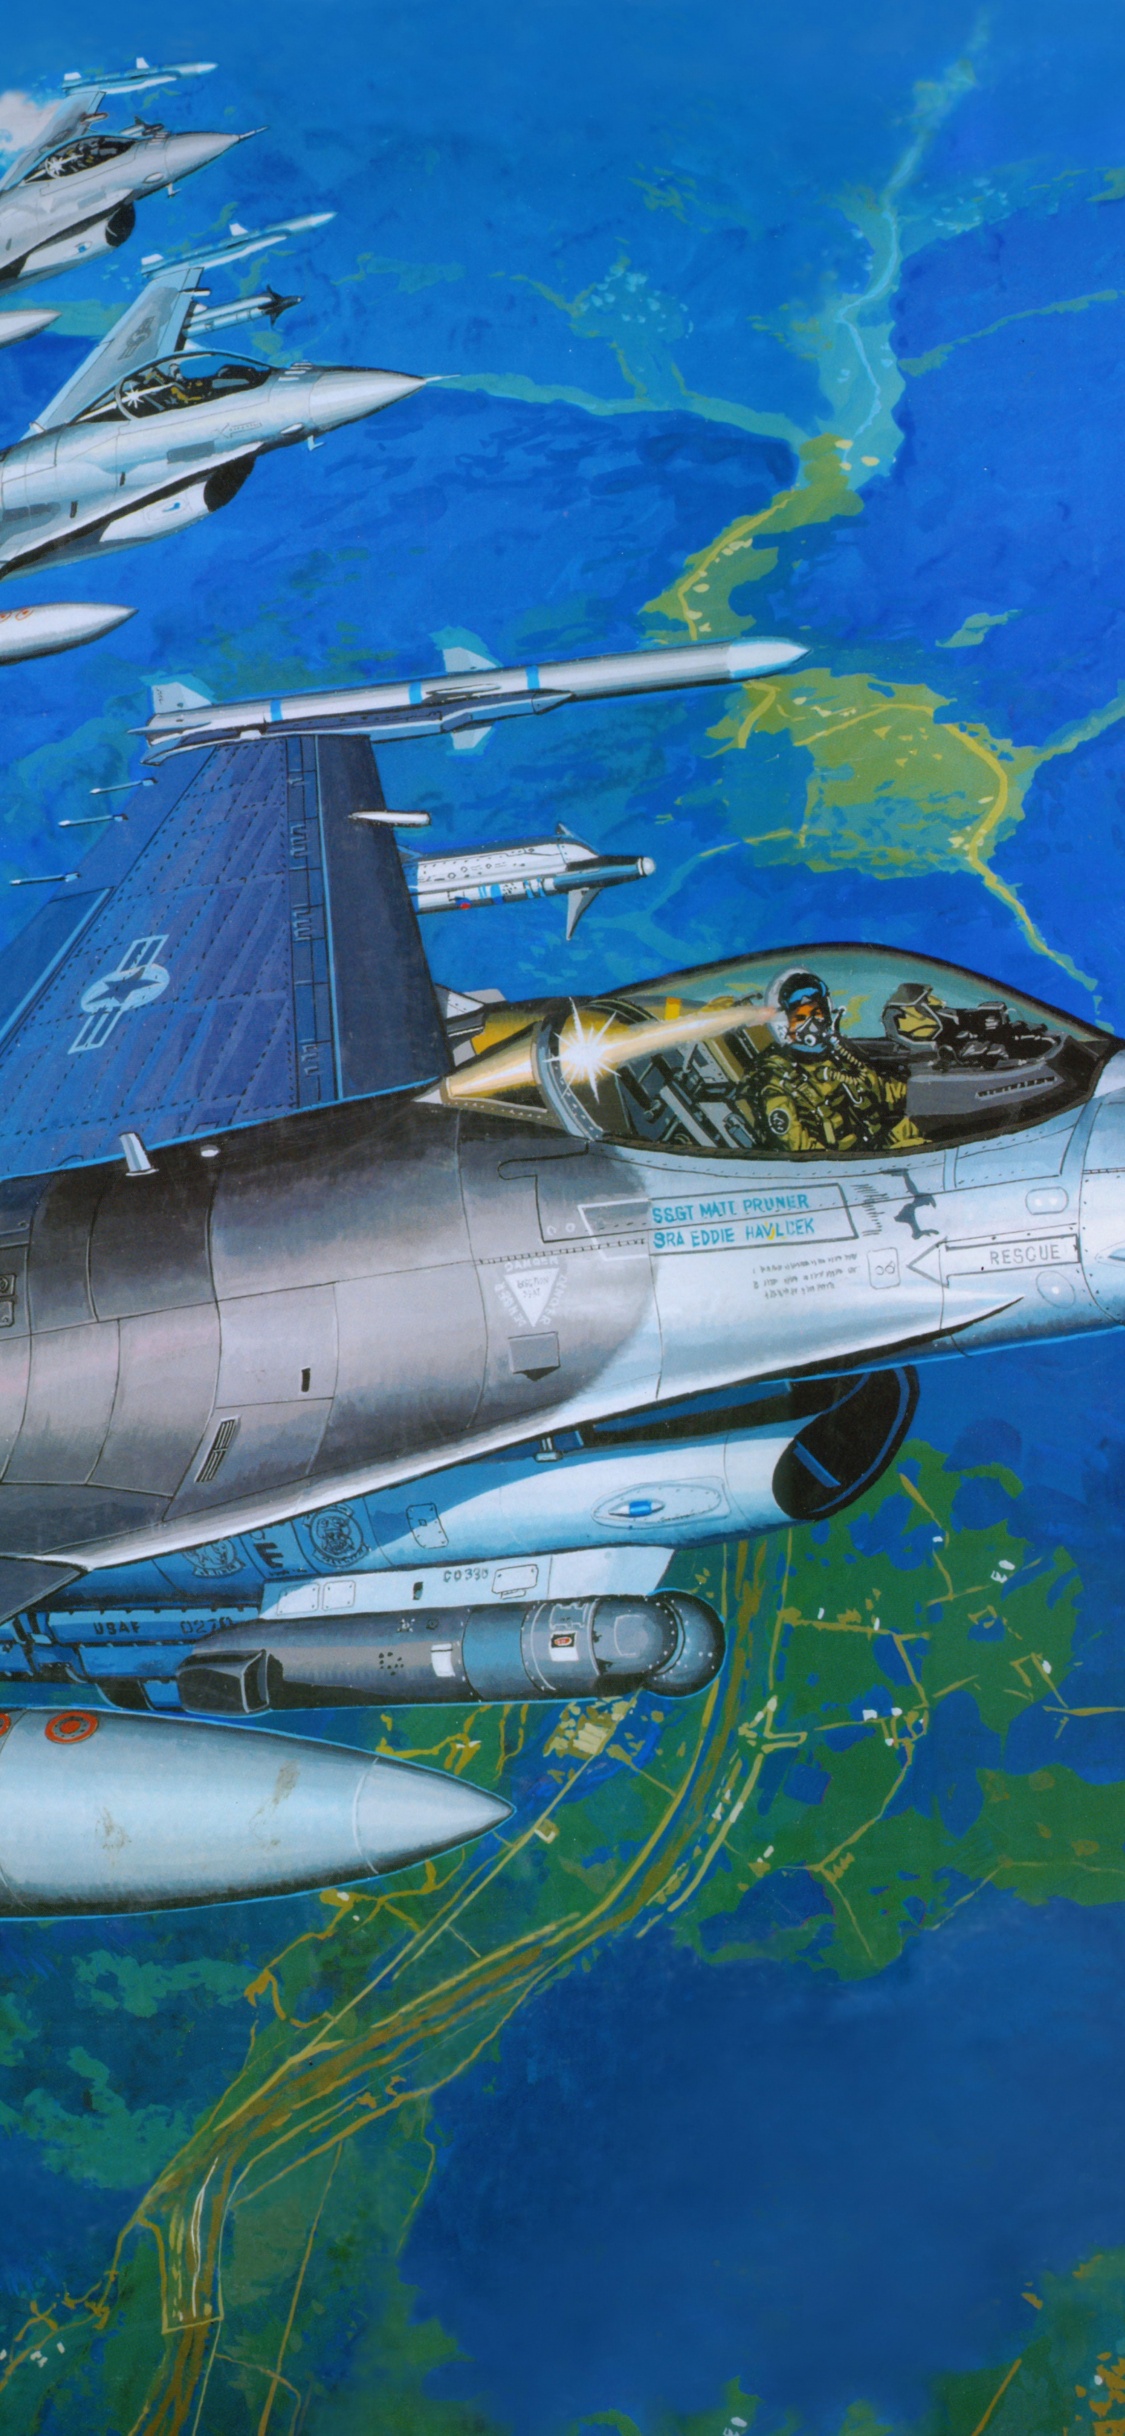 塑料模型, 航空, 空军, 军用飞机, 喷气式飞机 壁纸 1125x2436 允许